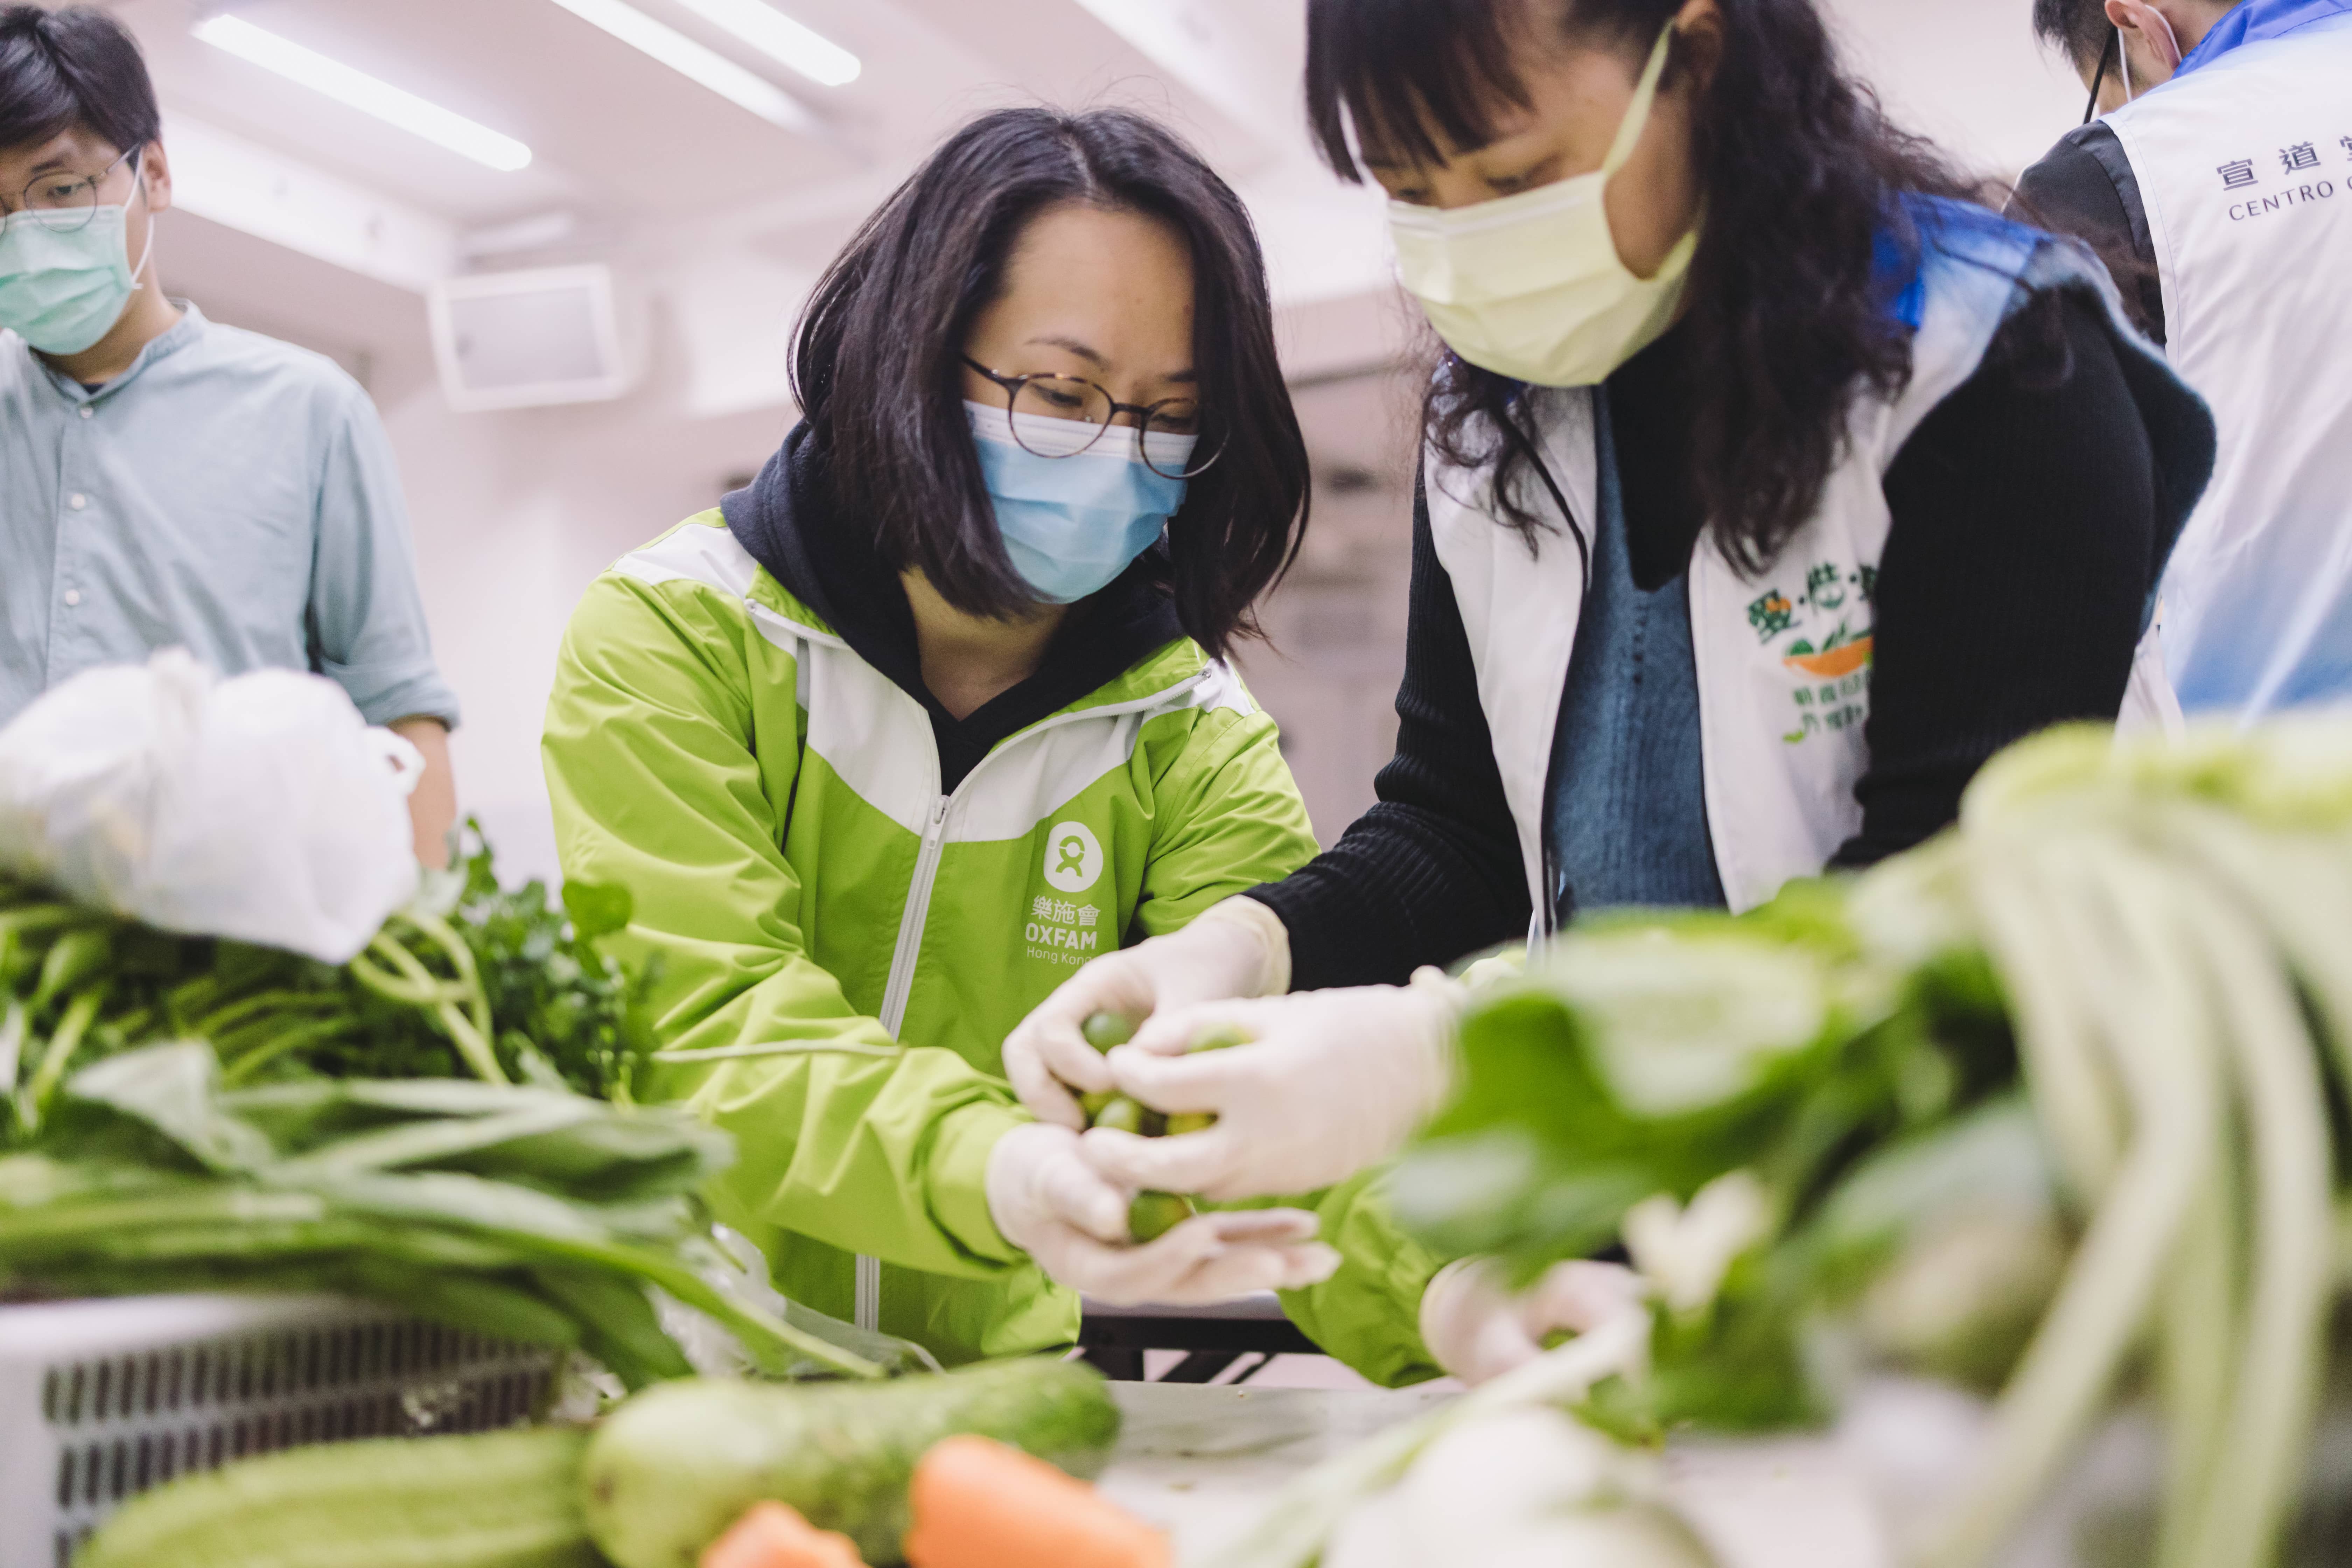 乐施会同事与合作伙伴的职员会先检查剩菜质素，如有坏掉的部分会先除掉。（摄影︰Pui Cheng Lei / 乐施会）